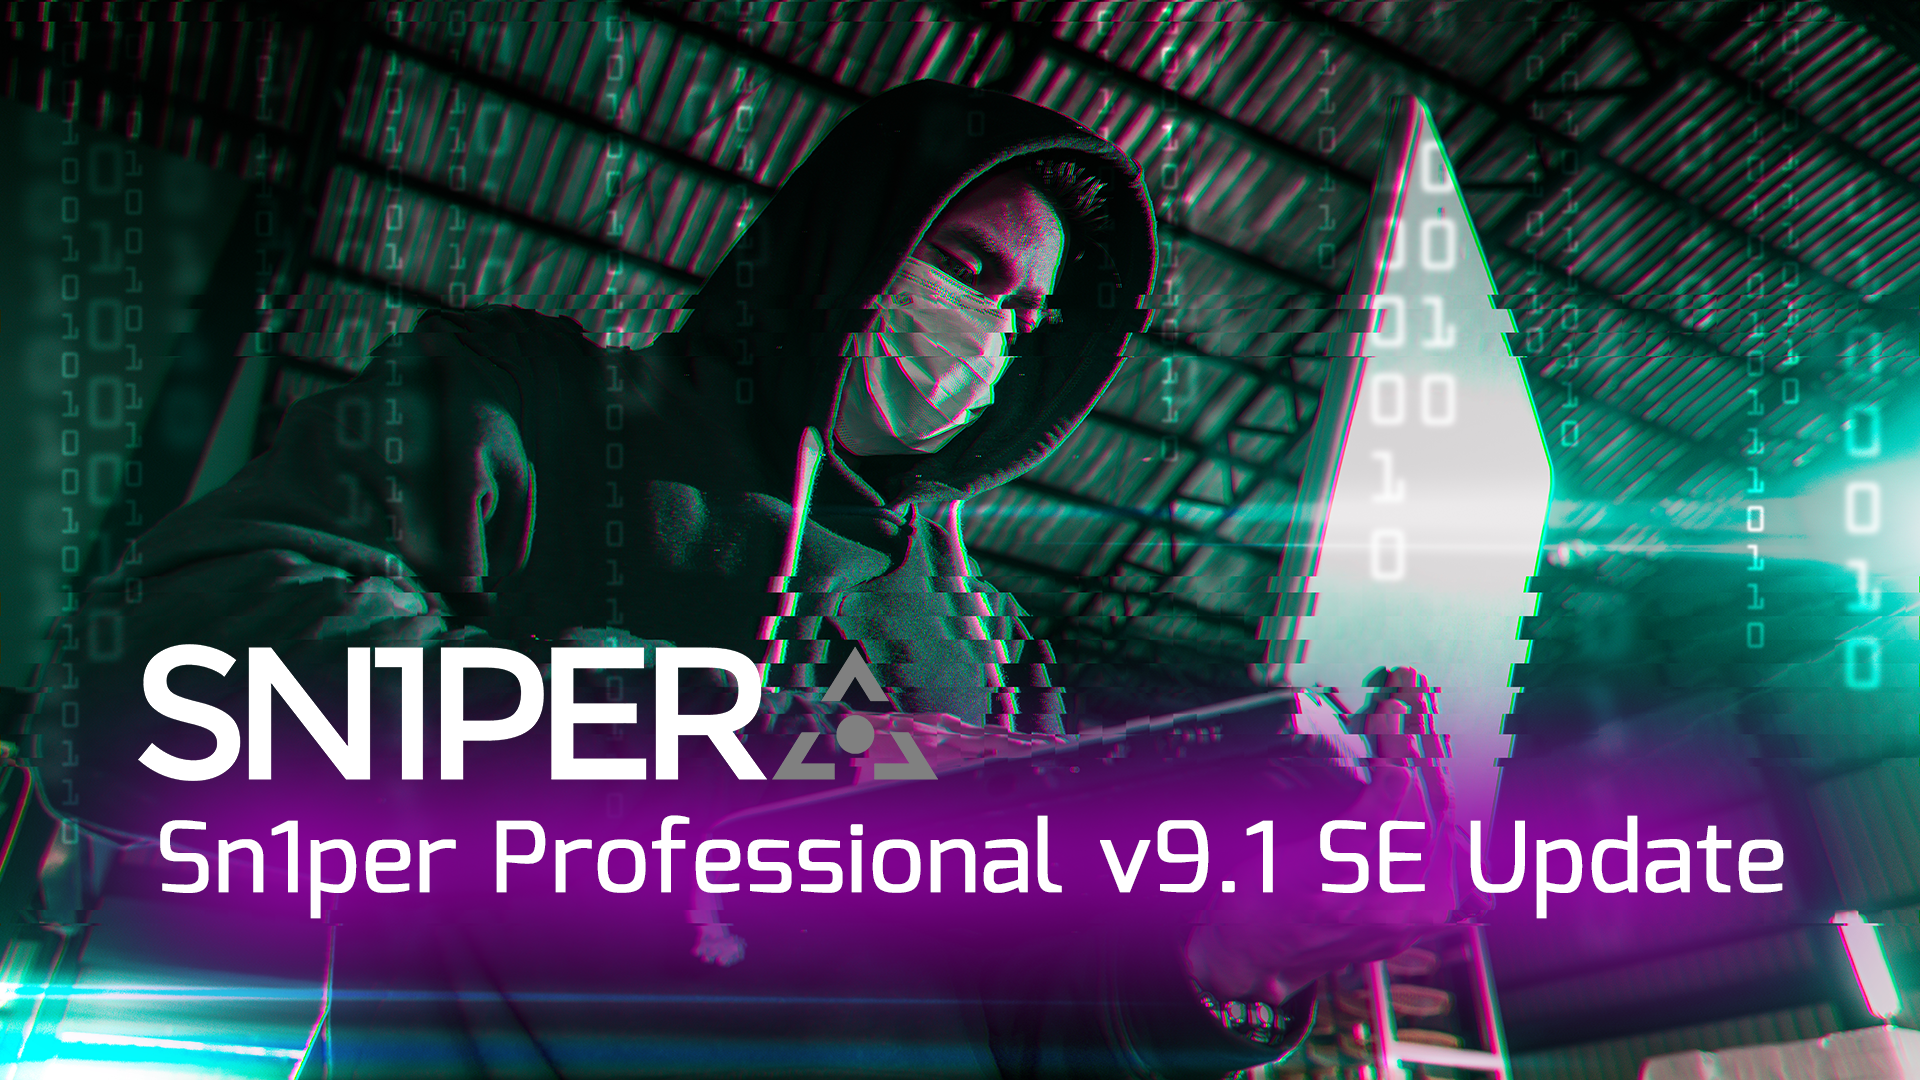 Sn1per Professional v9.1 Update